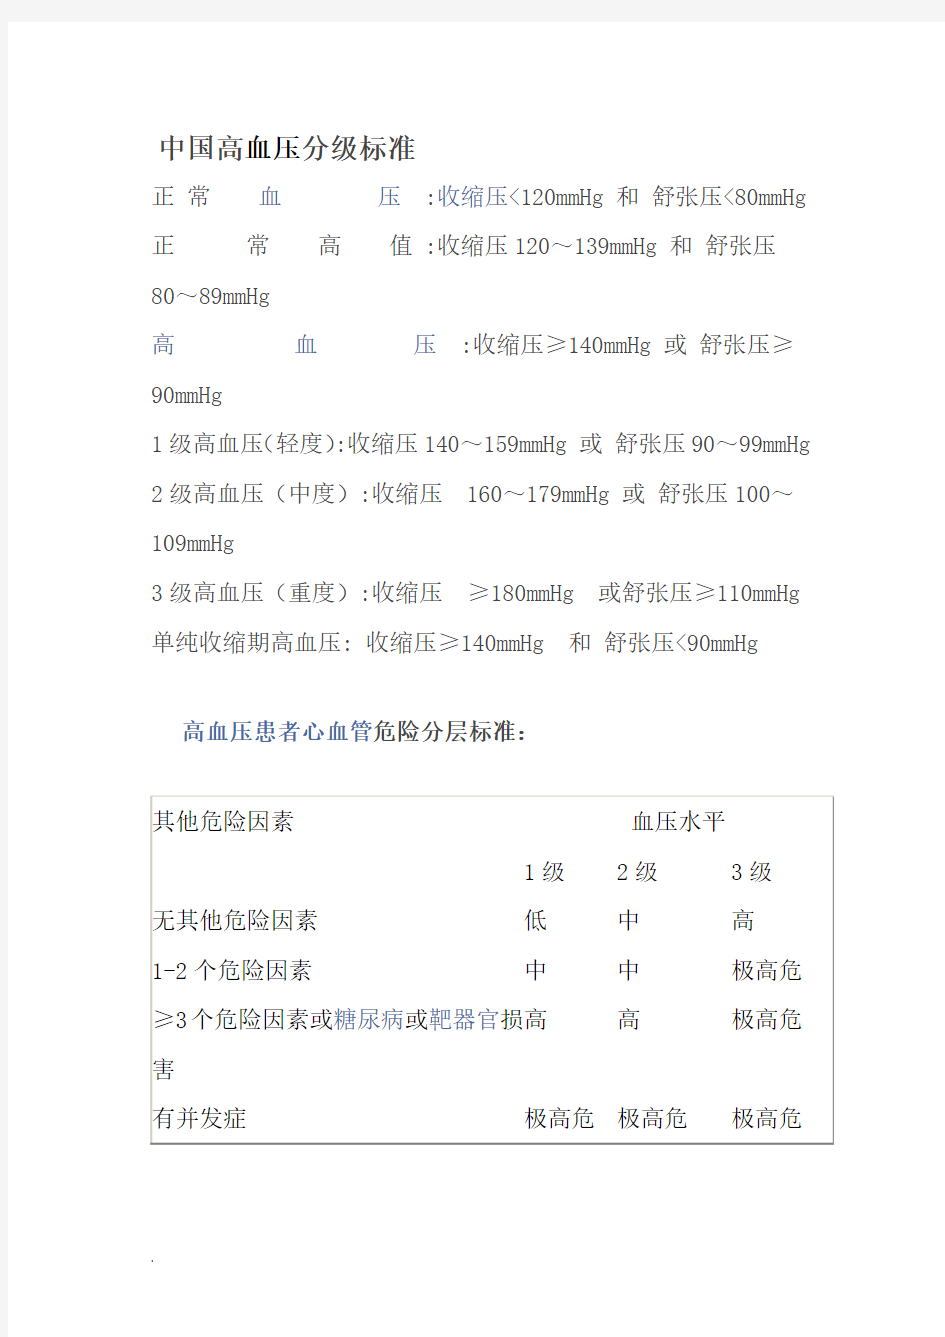 中国高血压分级标准1